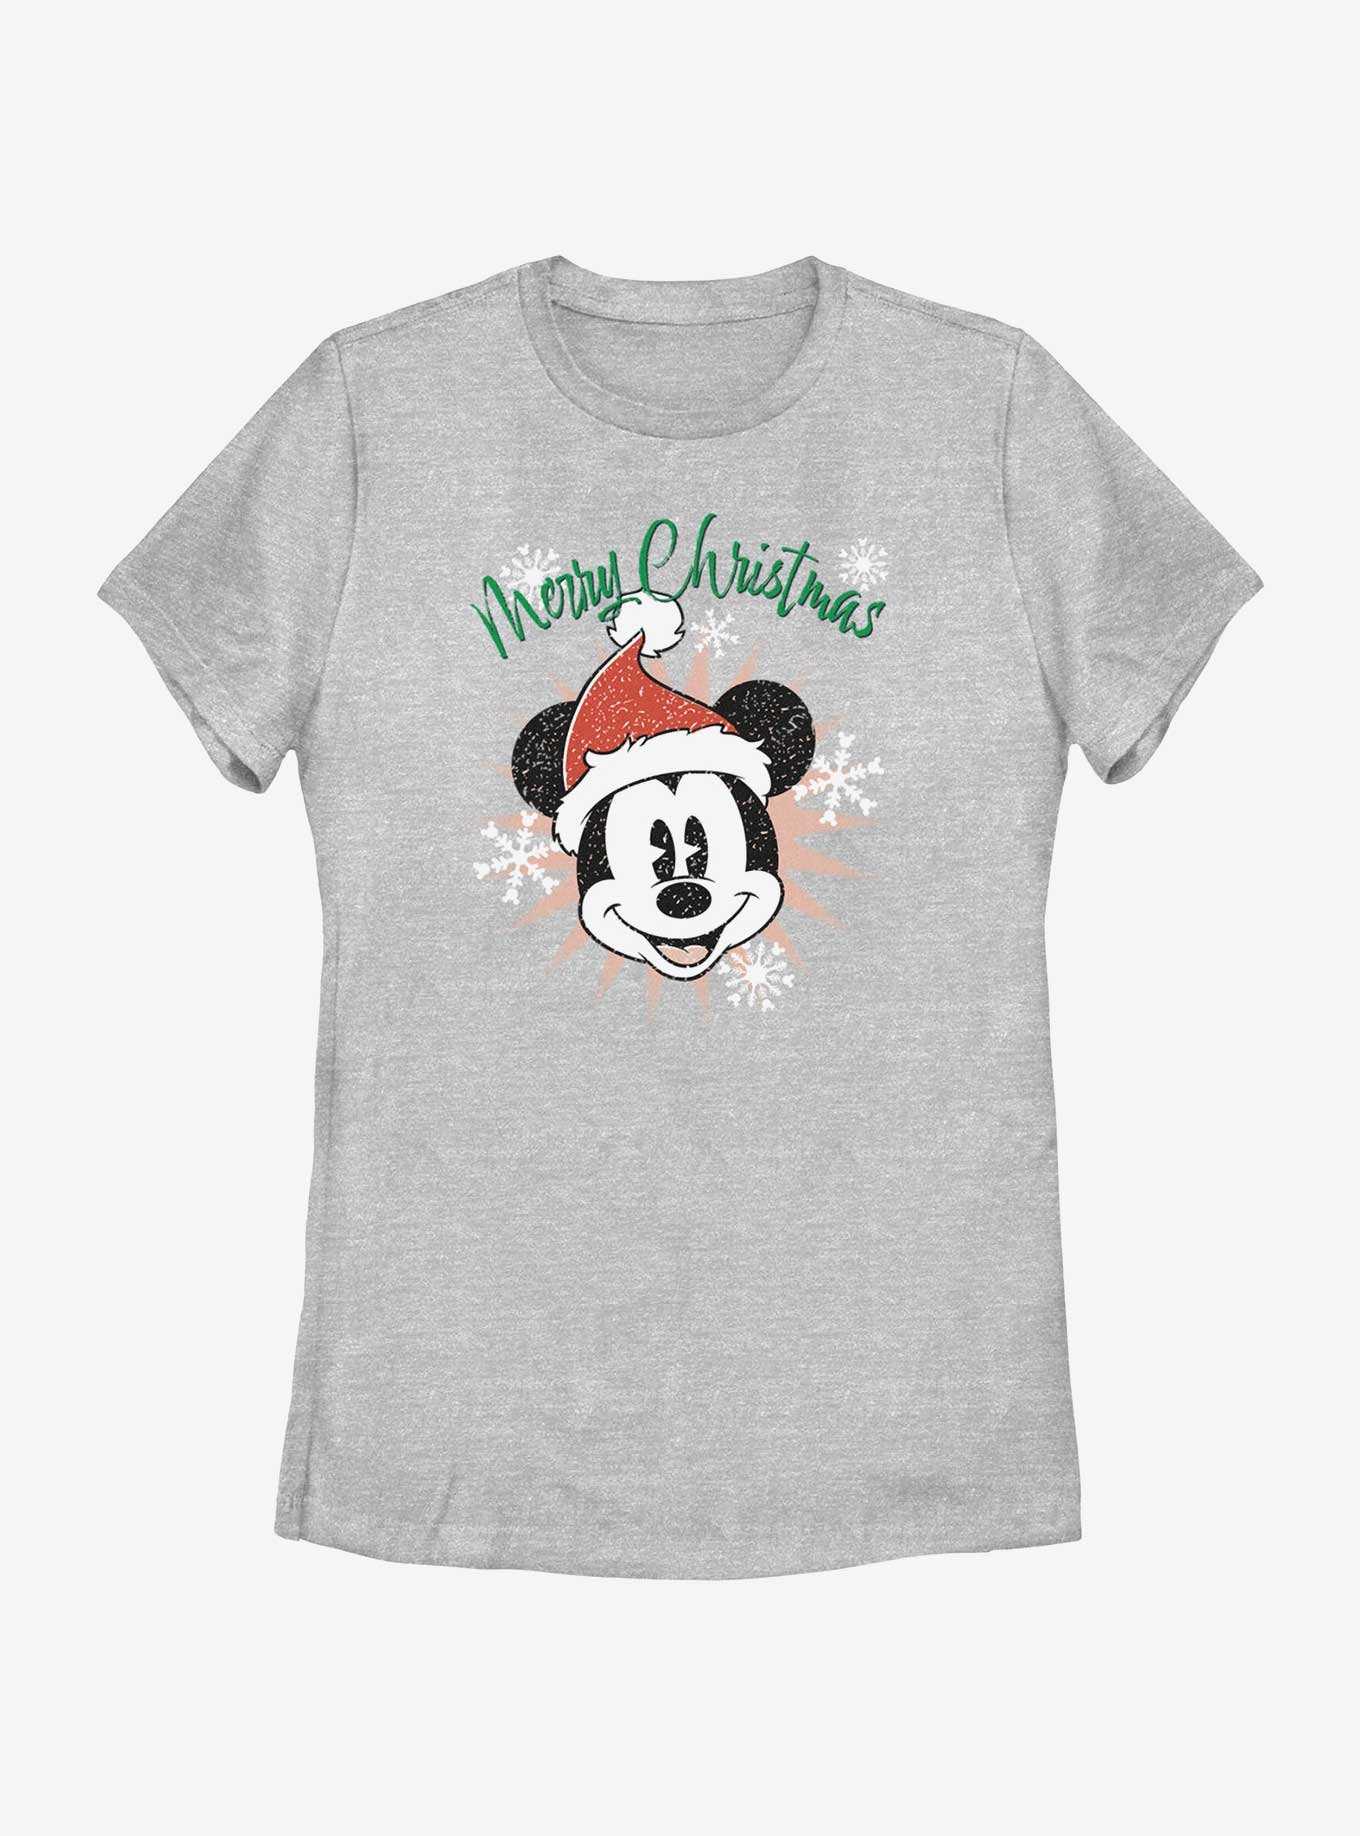 Disney Mickey Mouse Snowflakes Santa Mickey Womens T-Shirt, , hi-res